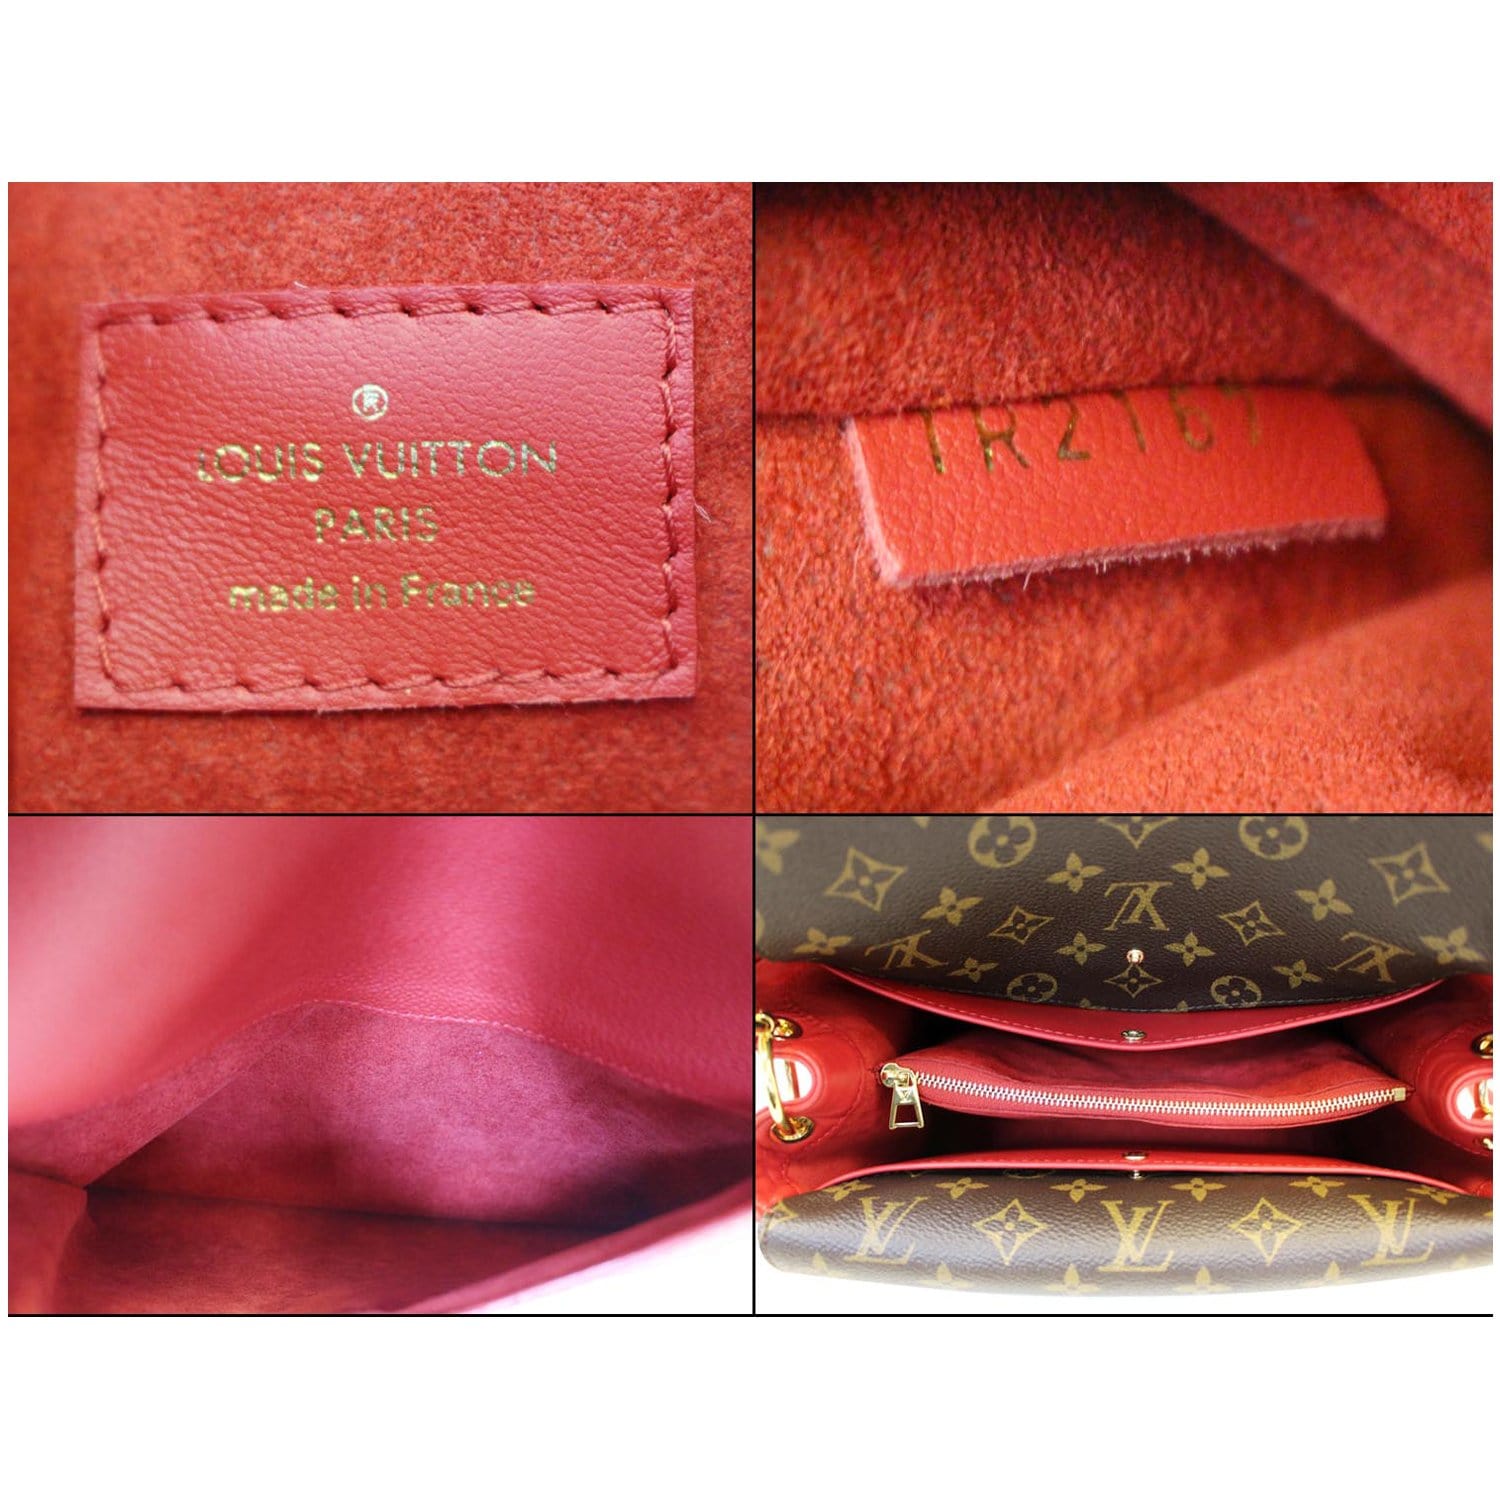 Louis Vuitton Double V Handbag Calfskin and Monogram Canvas at